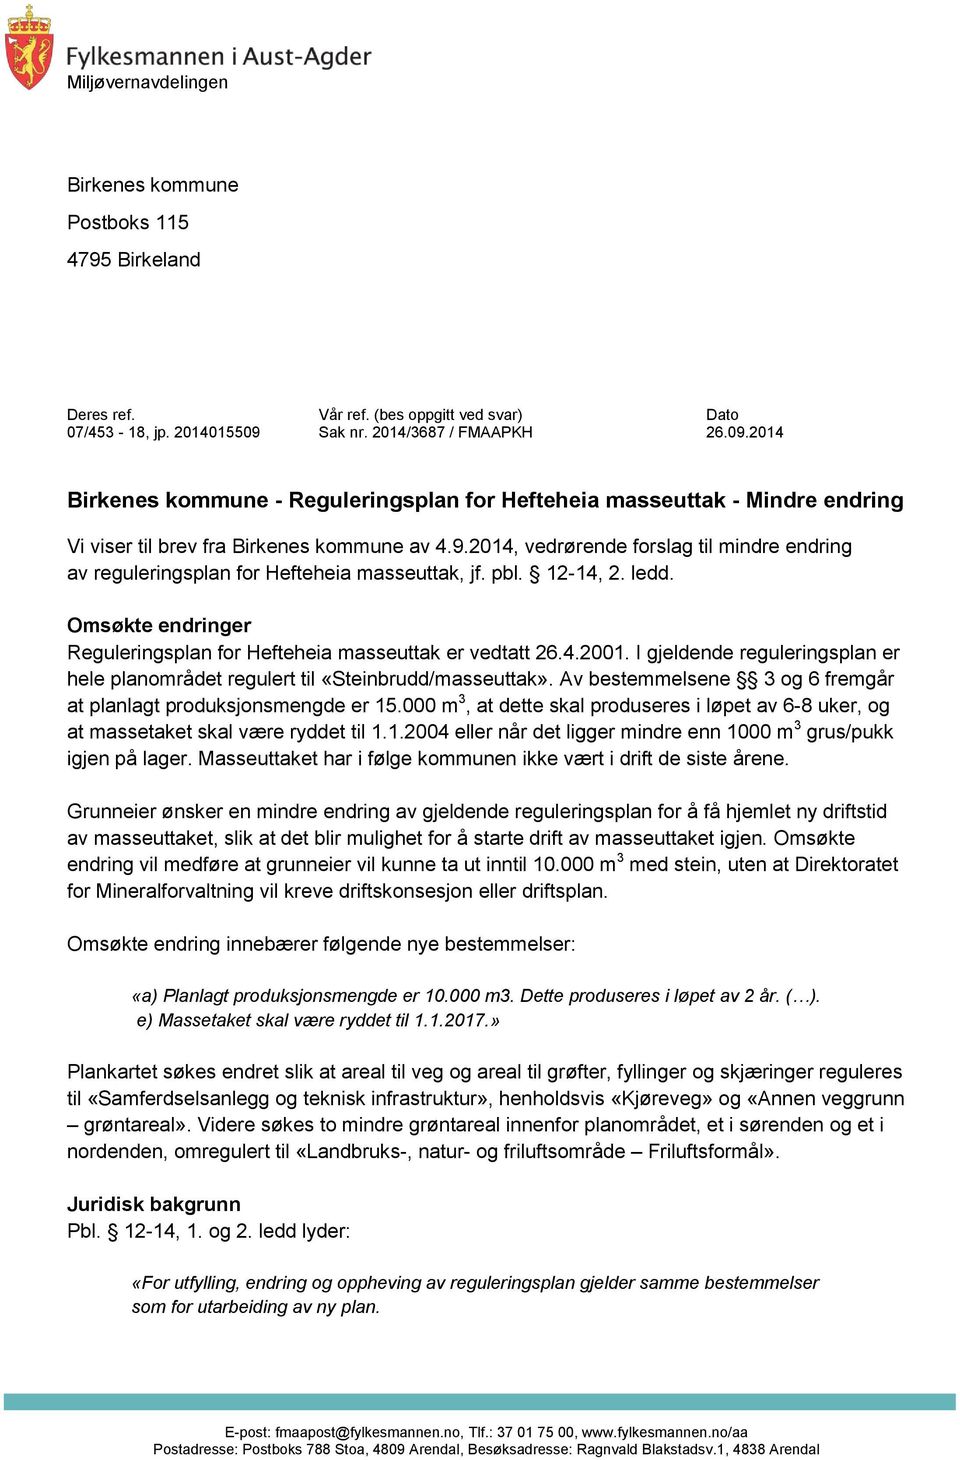 pbl. 12-14, 2. ledd. Omsøkte endringer Reguleringsplan for Hefteheia masseuttak er vedtatt 26.4.2001. I gjeldende reguleringsplan er hele planområdet regulert til «Steinbrudd/masseuttak».